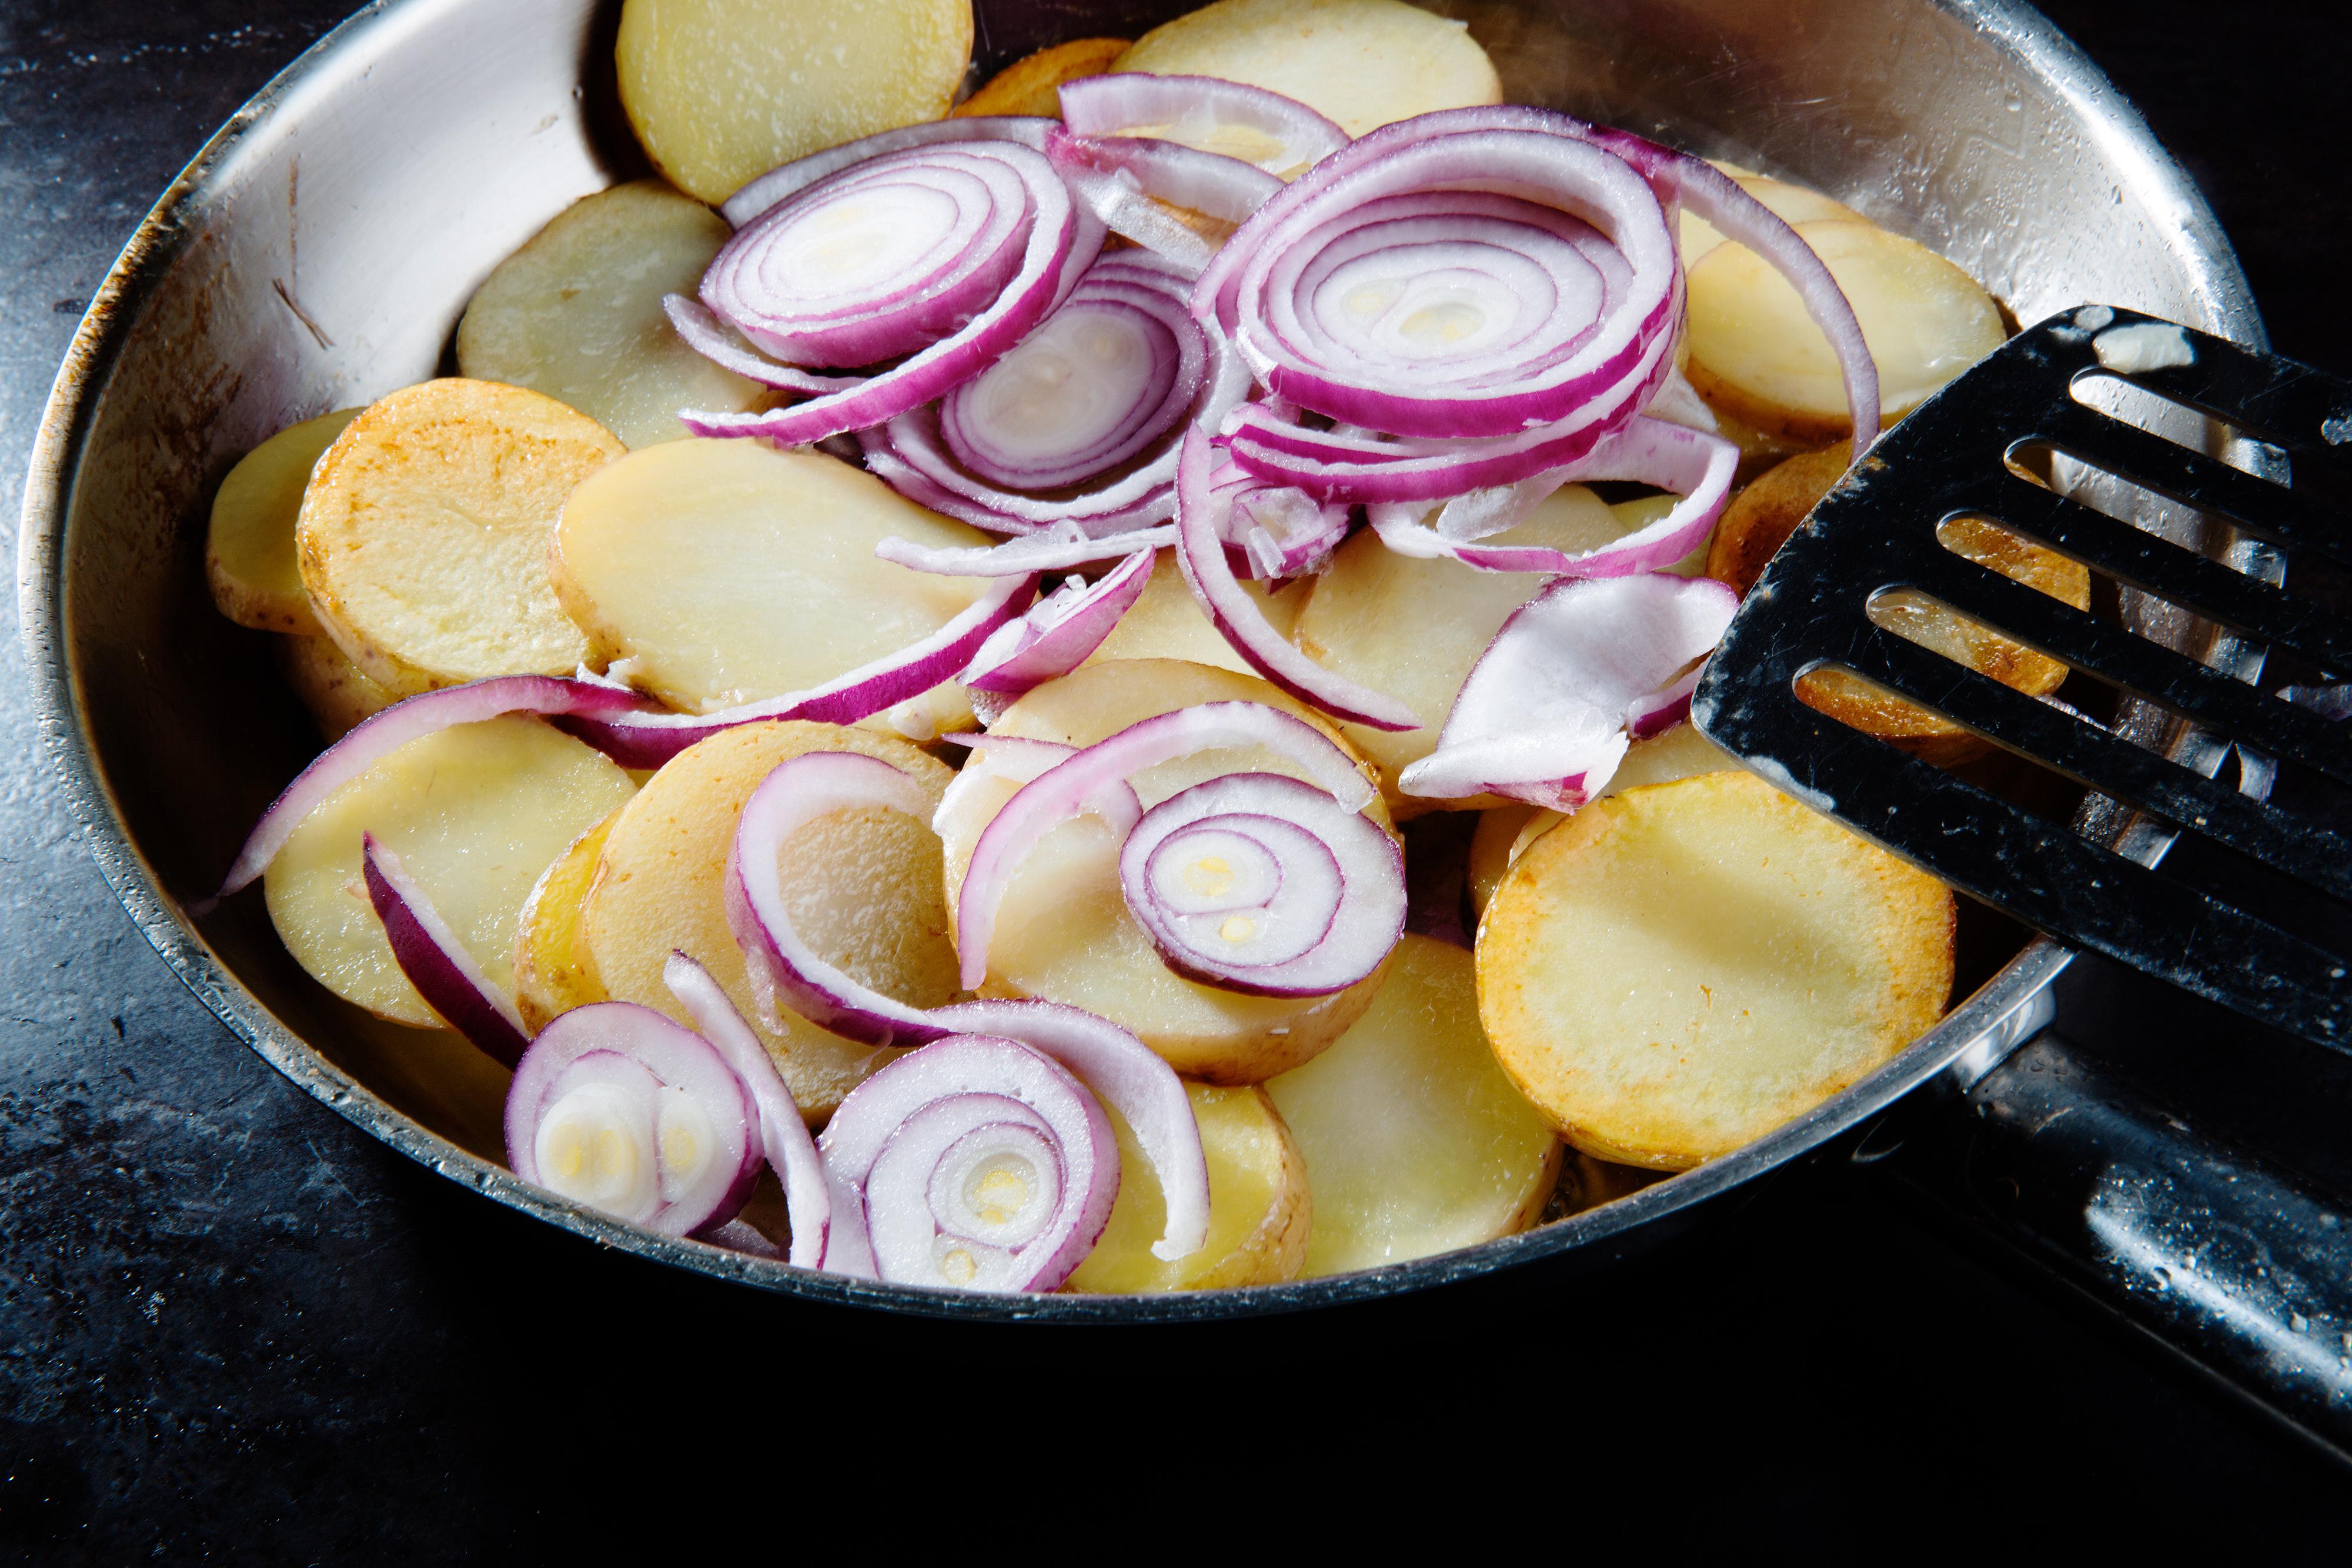 Vask potetene godt, før de skjæres opp i skiver. Varm olje i en vid panne og stek potetskivene i ca. 10 minutter. Tilsett rødløk skåret i tynne ringer, la den steke med de siste 5 minuttene. Vend potetskivene jevnlig under stekingen.